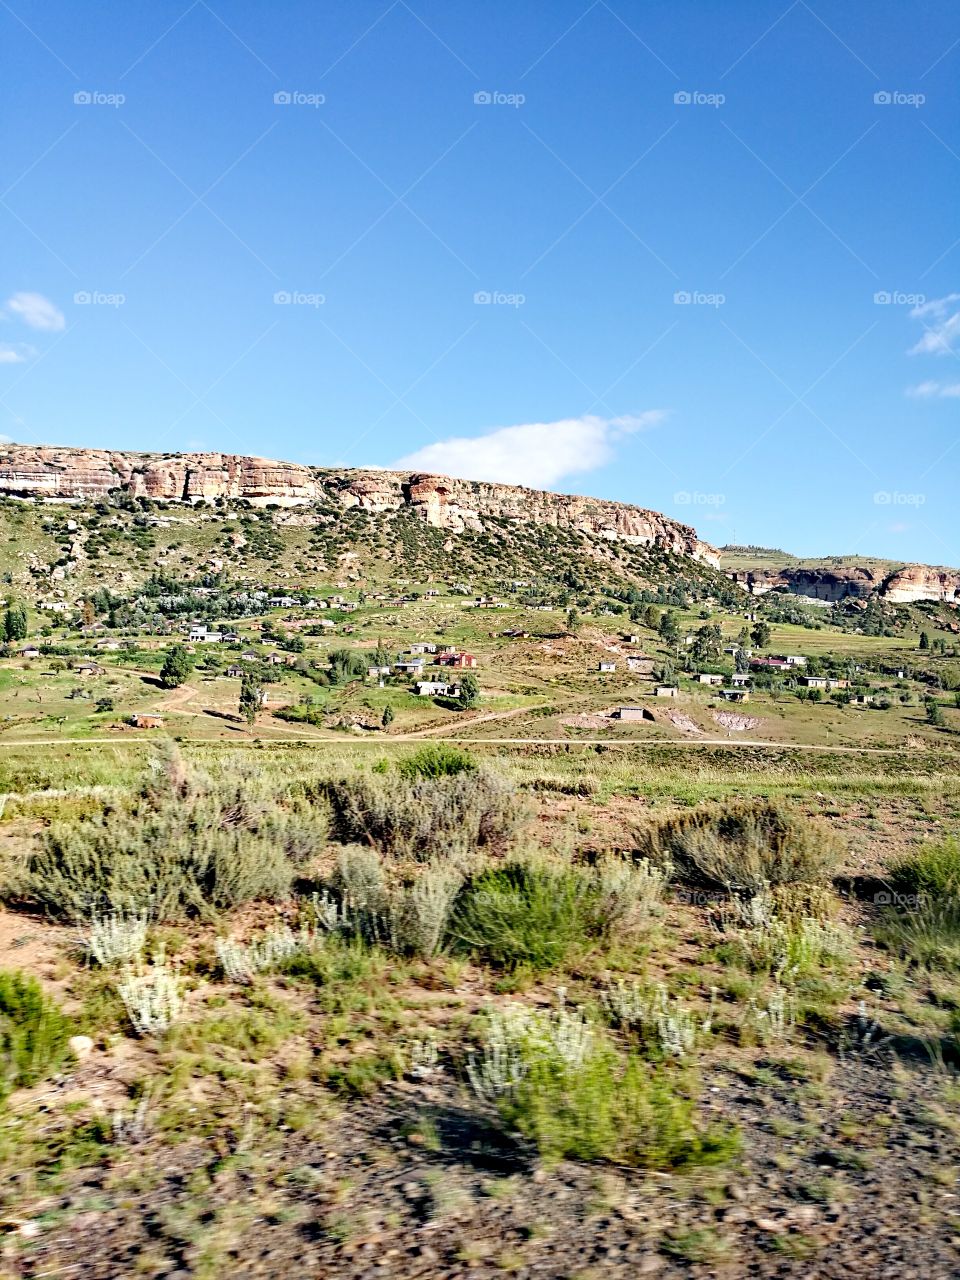 Lesotho village, Africa.